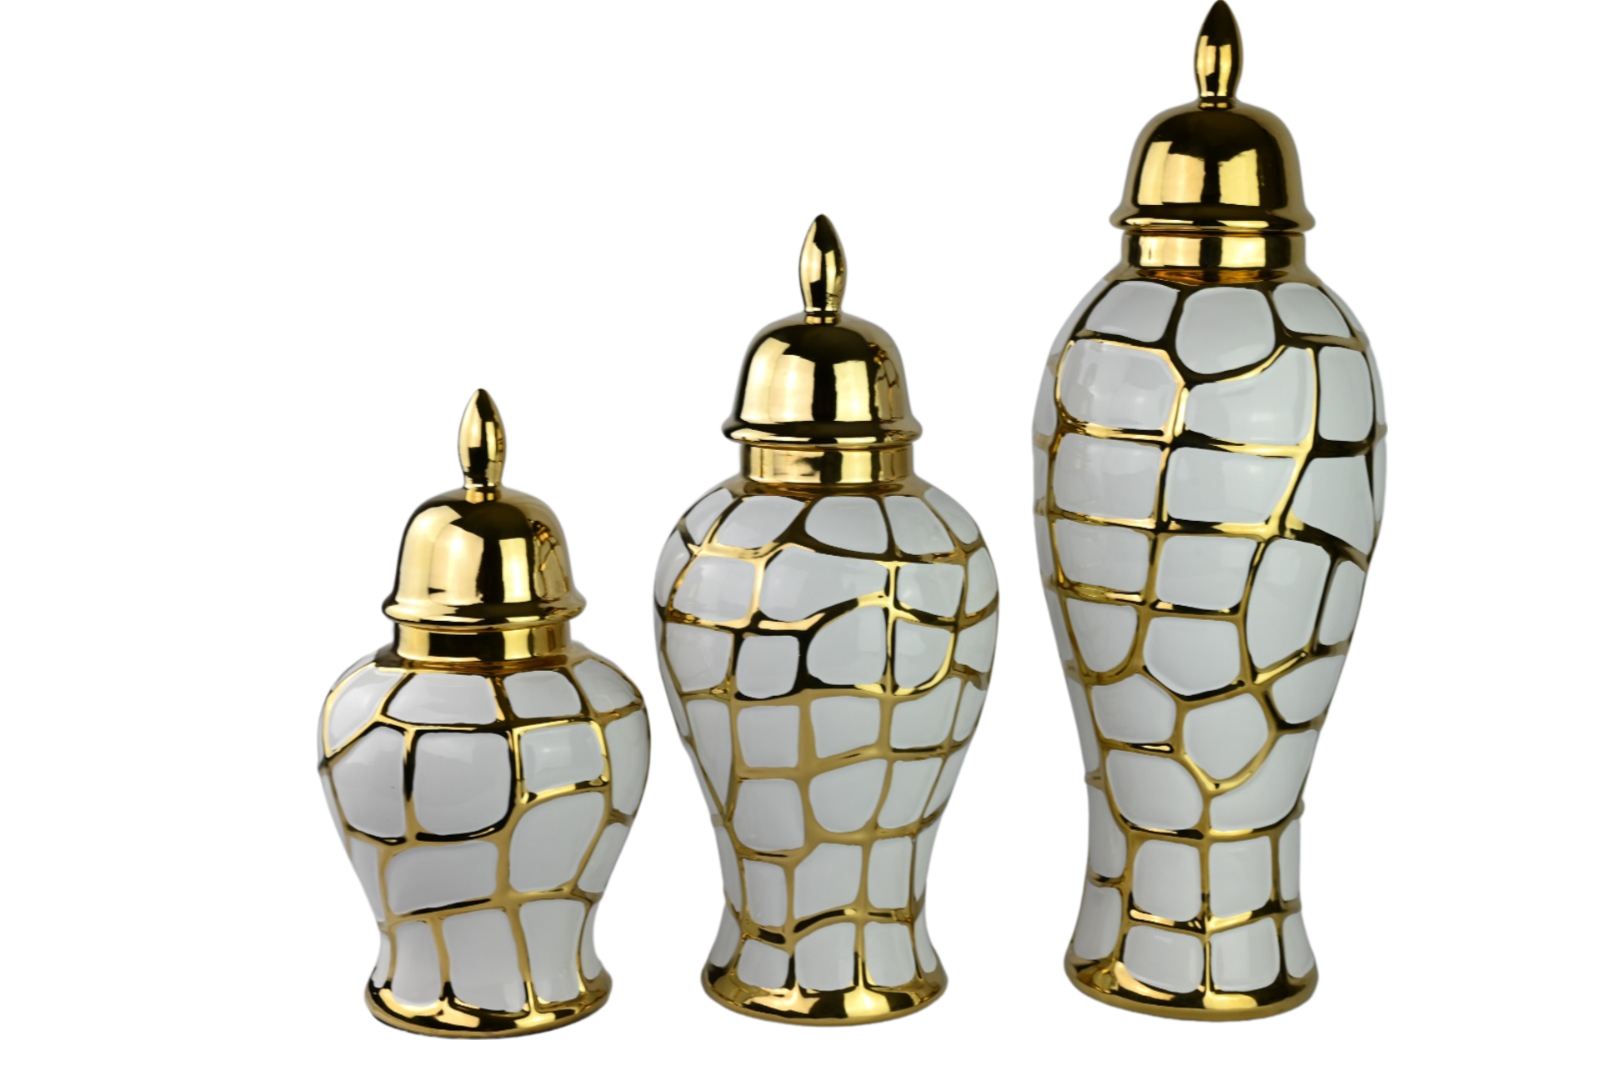 Ensemble de 3 pots décoratifs en céramique dorée - Grand, Moyen et Petit